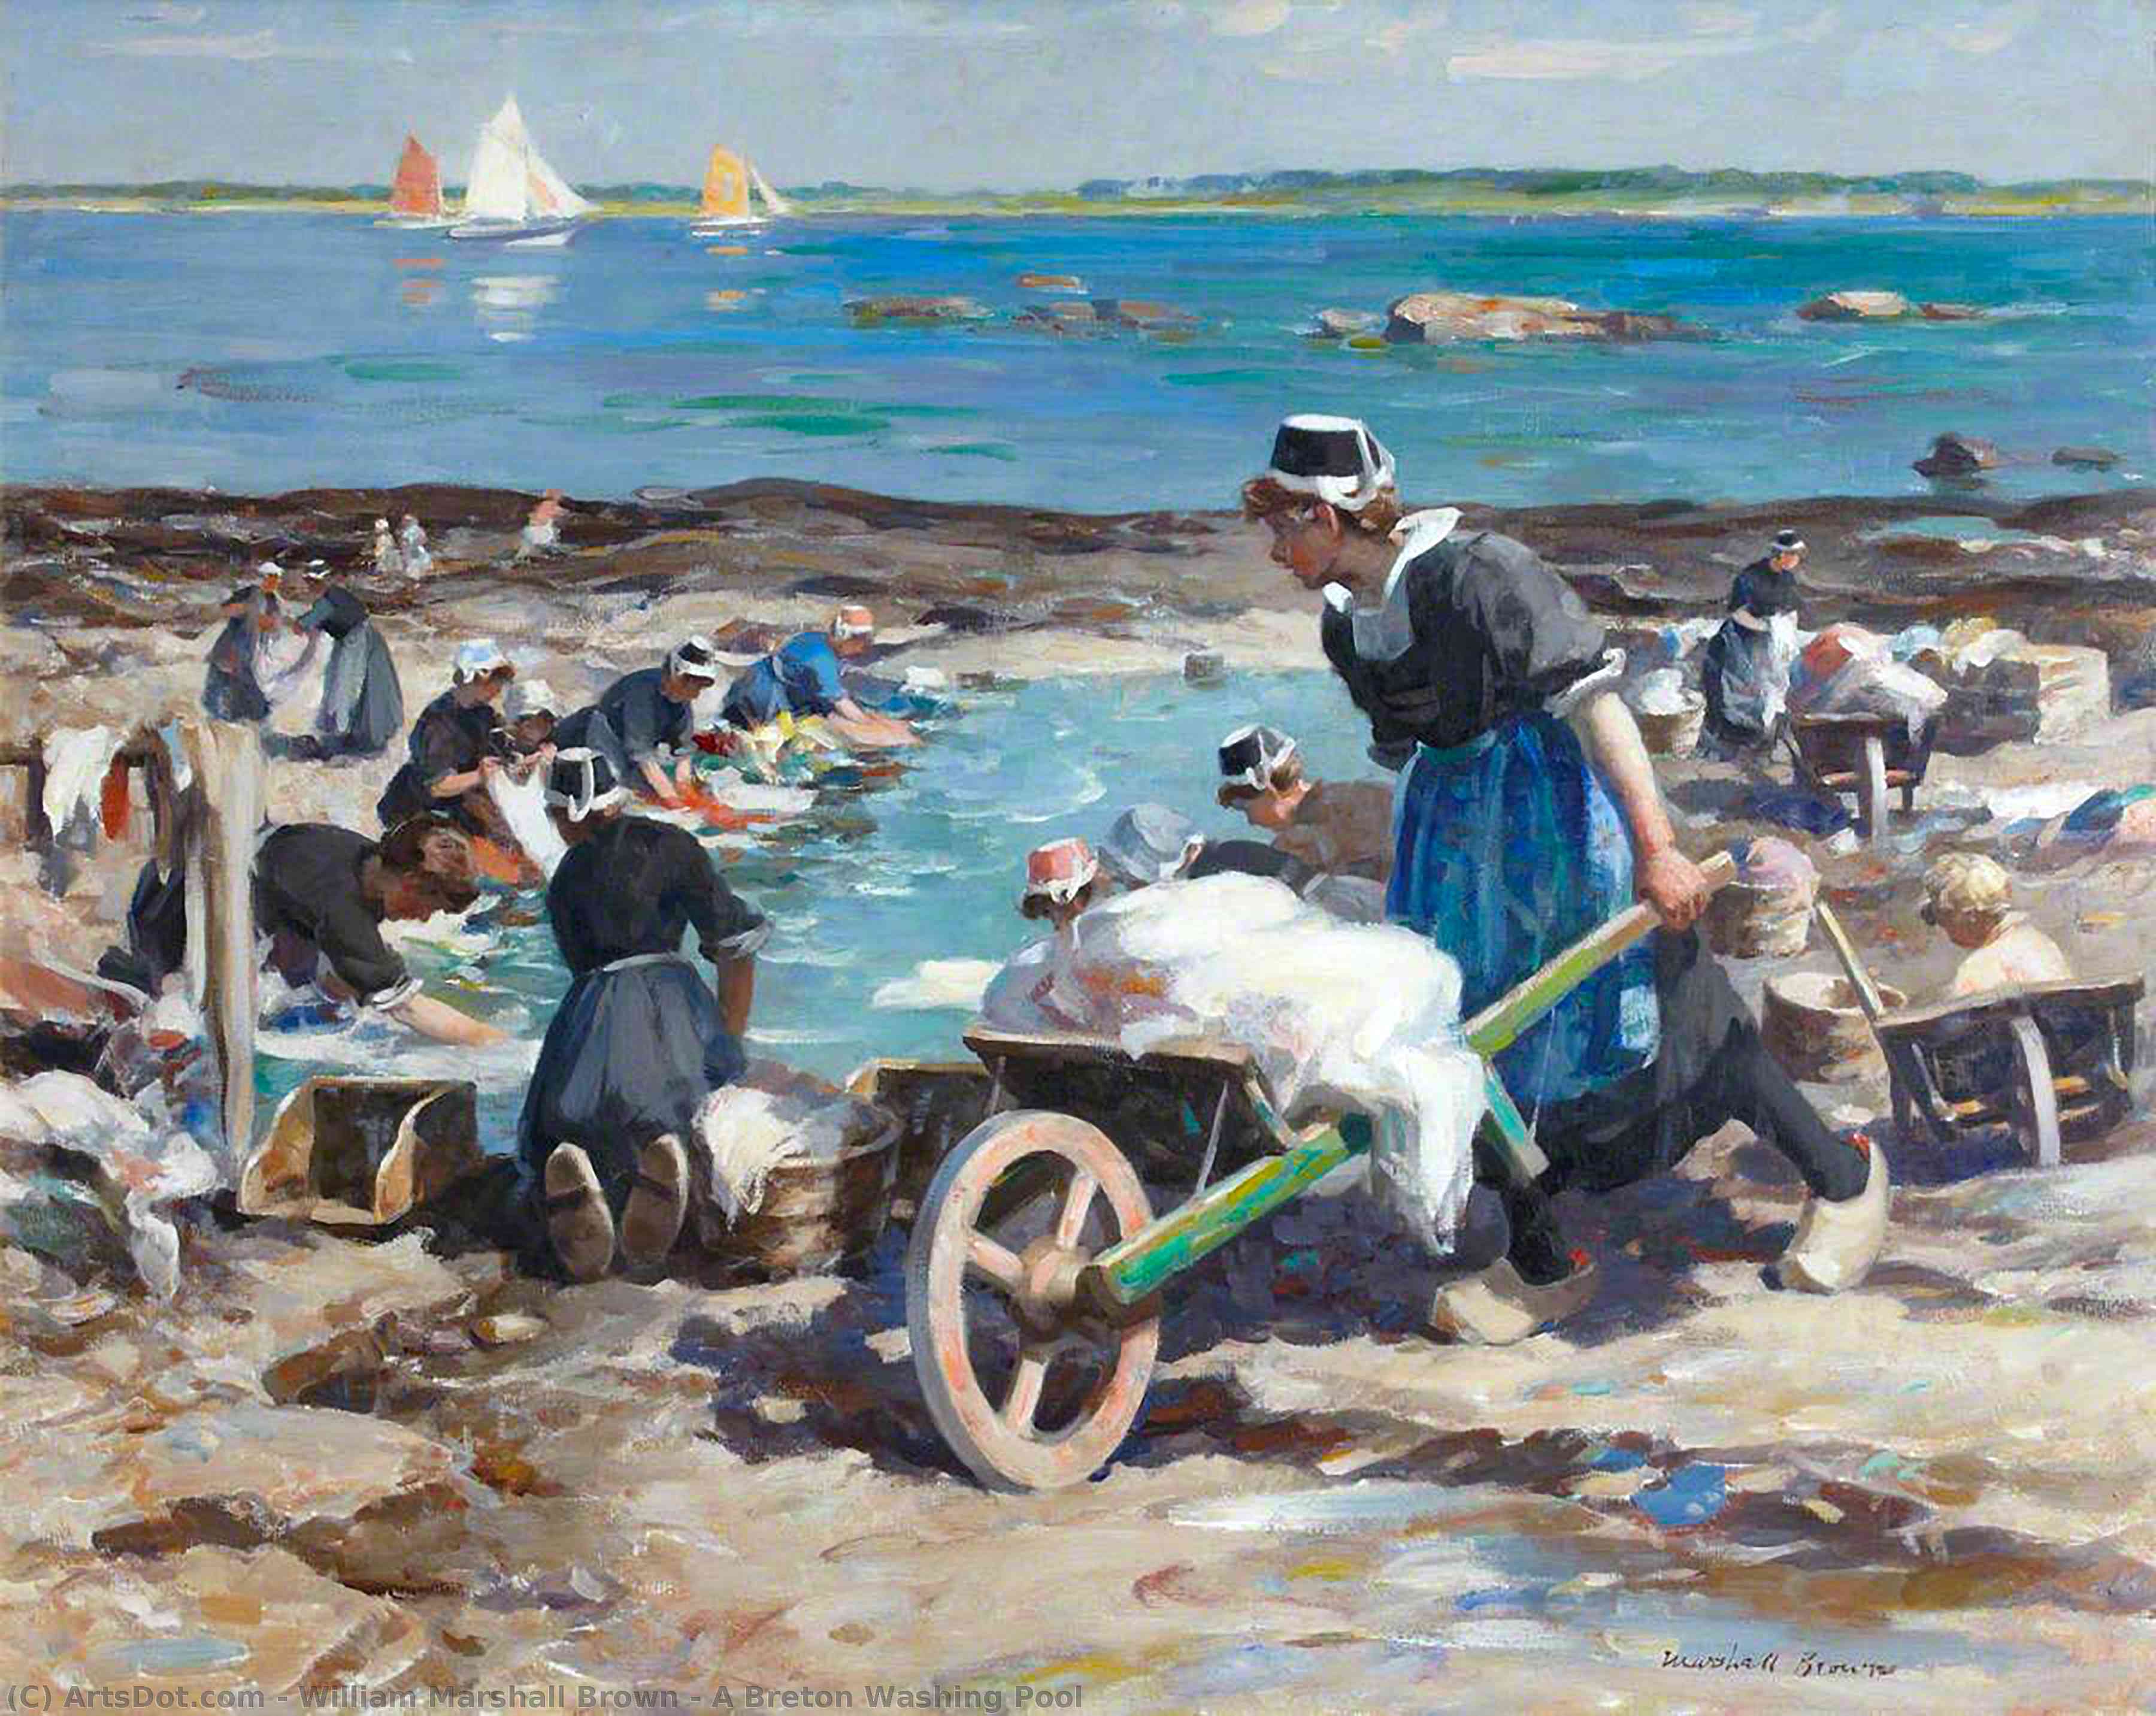 Ordem Reproduções De Pinturas Uma piscina de lavagem Breton, 1930 por William Marshall Brown (1863-1936) | ArtsDot.com